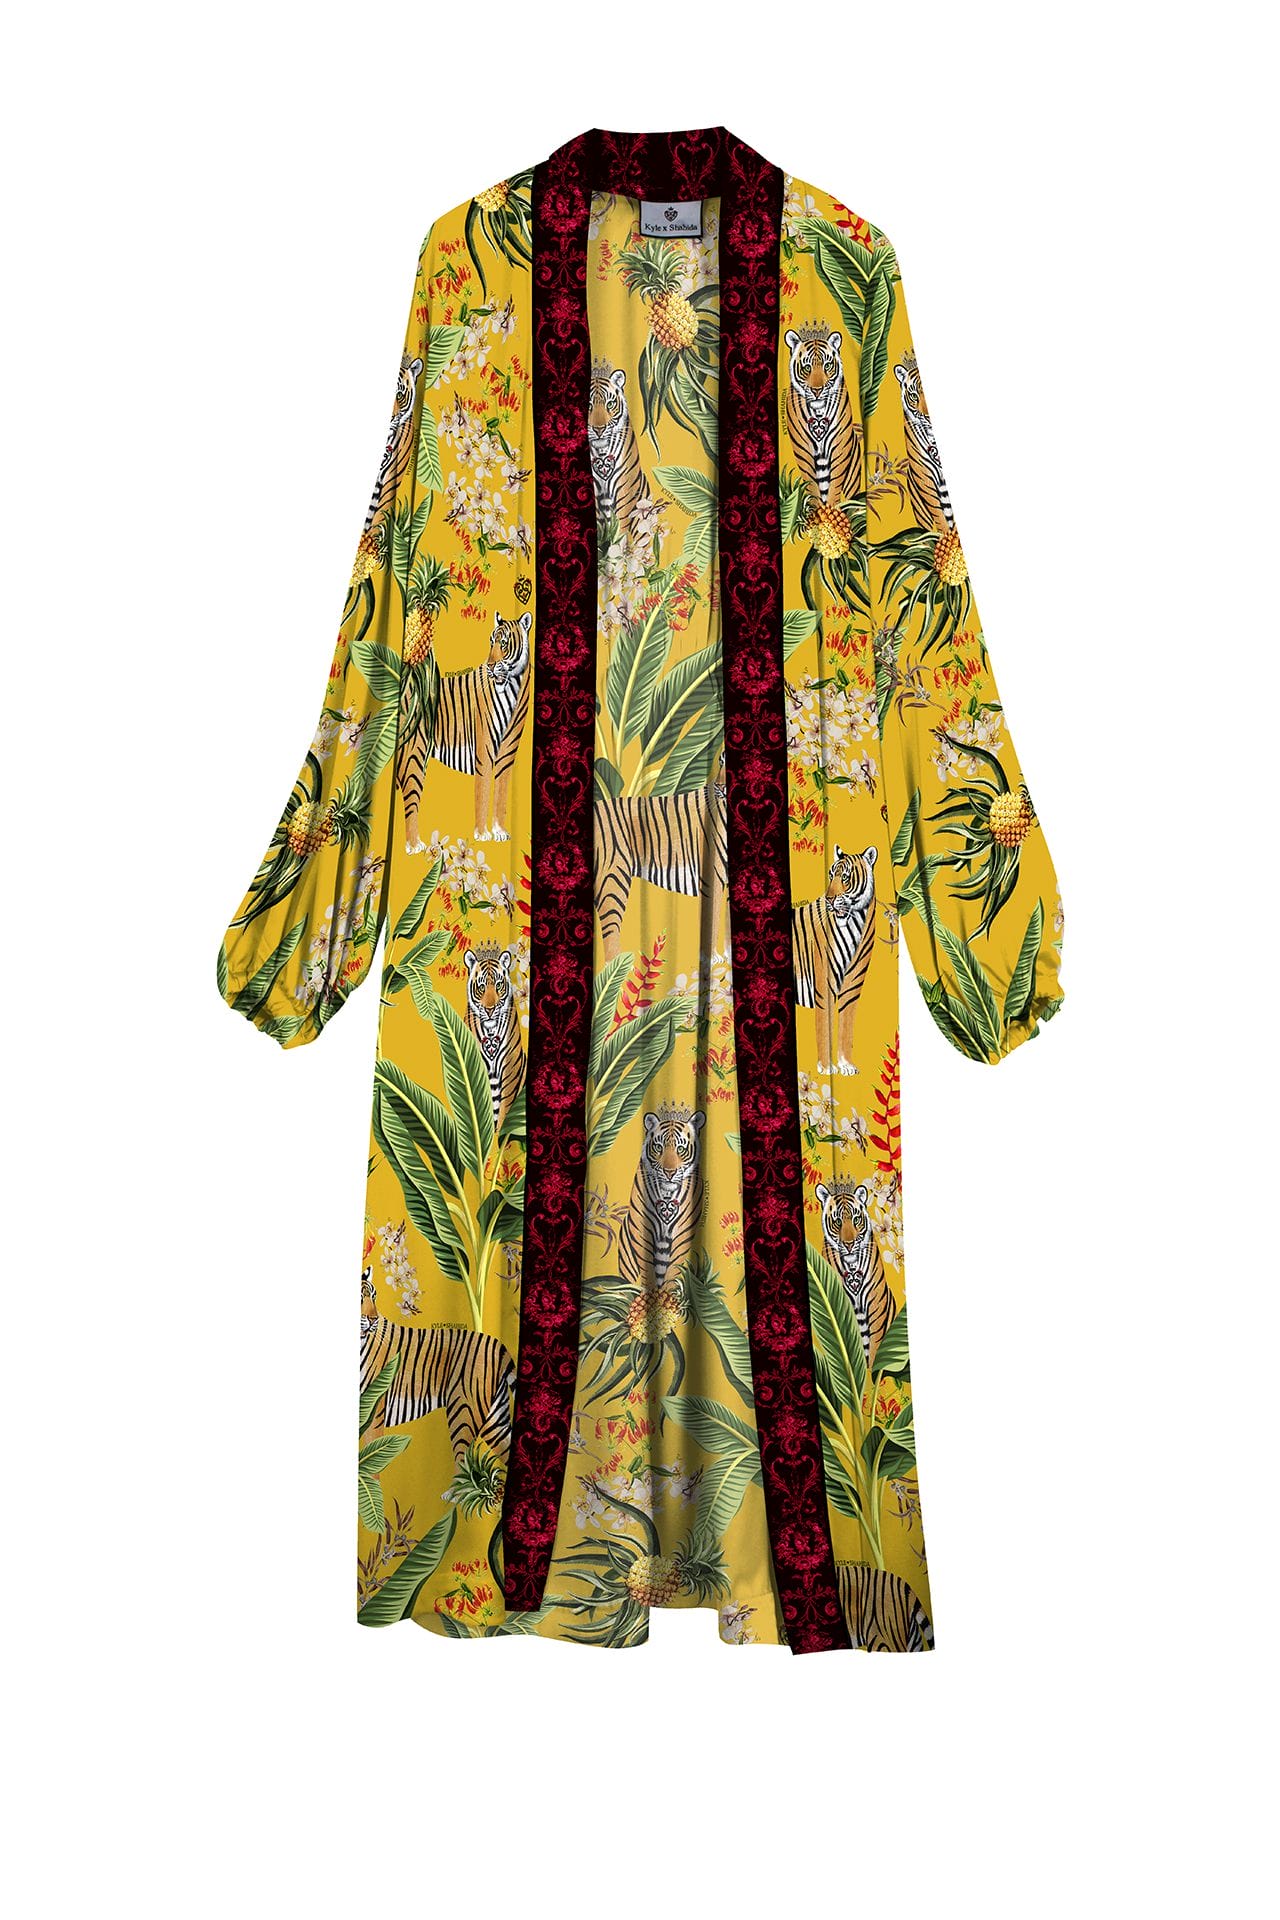 "yellow silk kimono" "Kyle X Shahida" "kimono silk robes for women" "long kimono robe womens" "floral kimono robe"